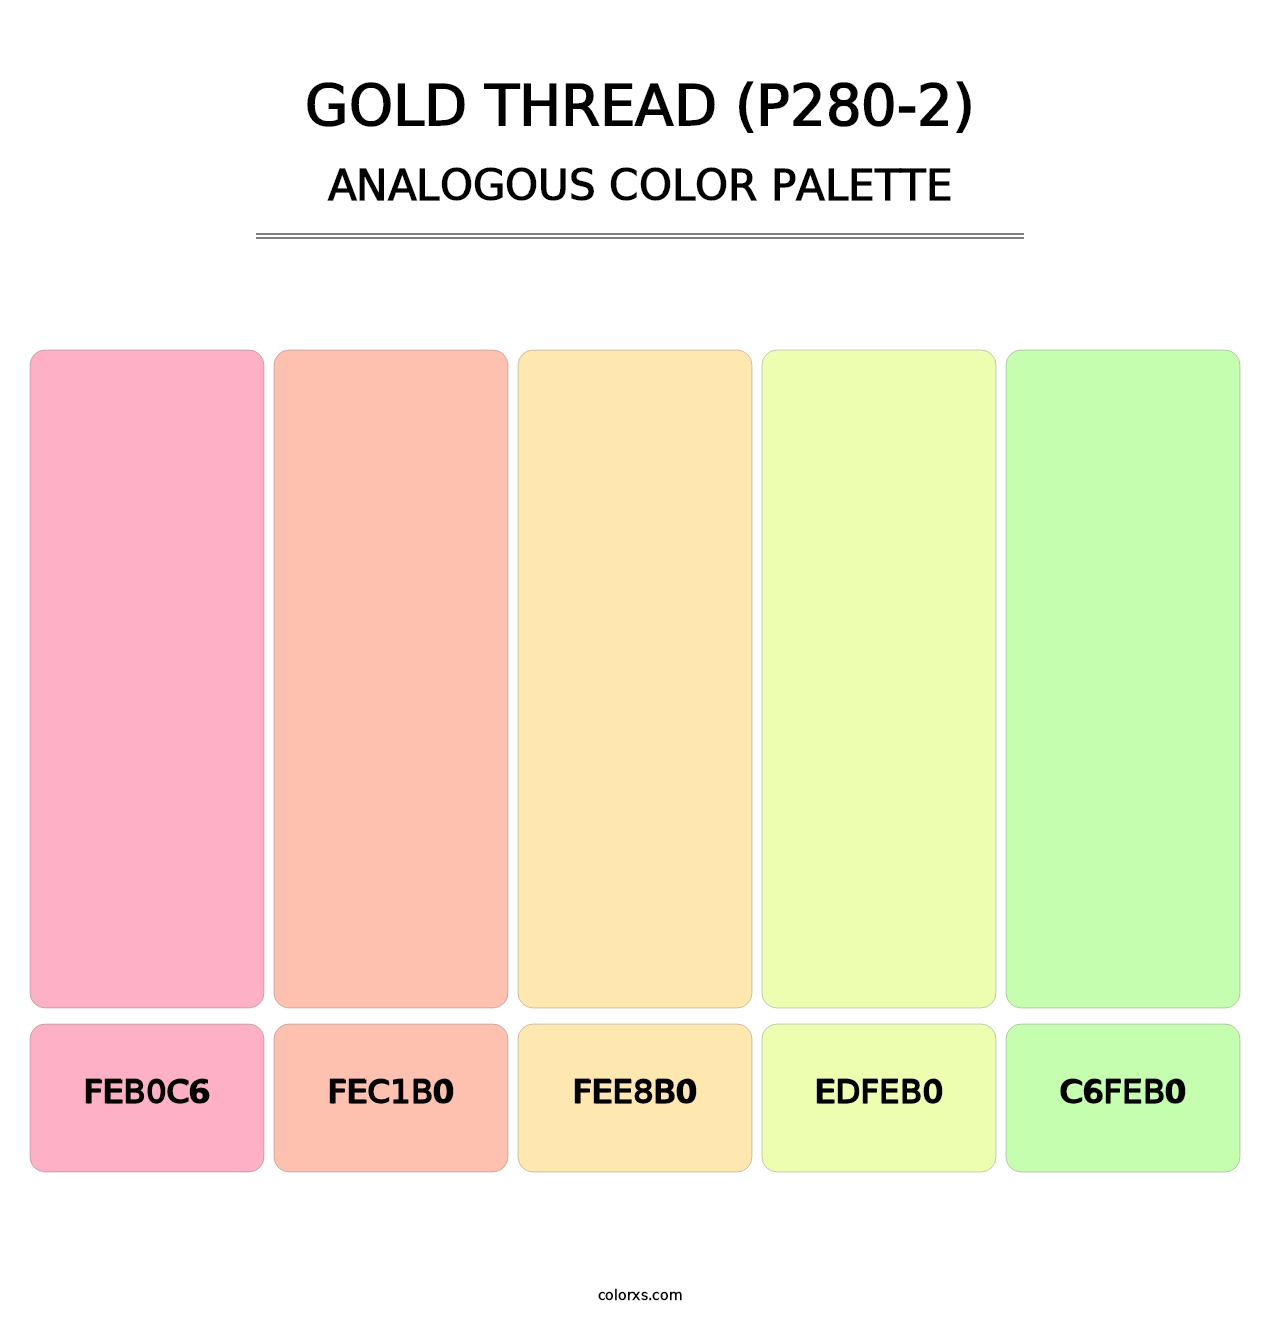 Gold Thread (P280-2) - Analogous Color Palette